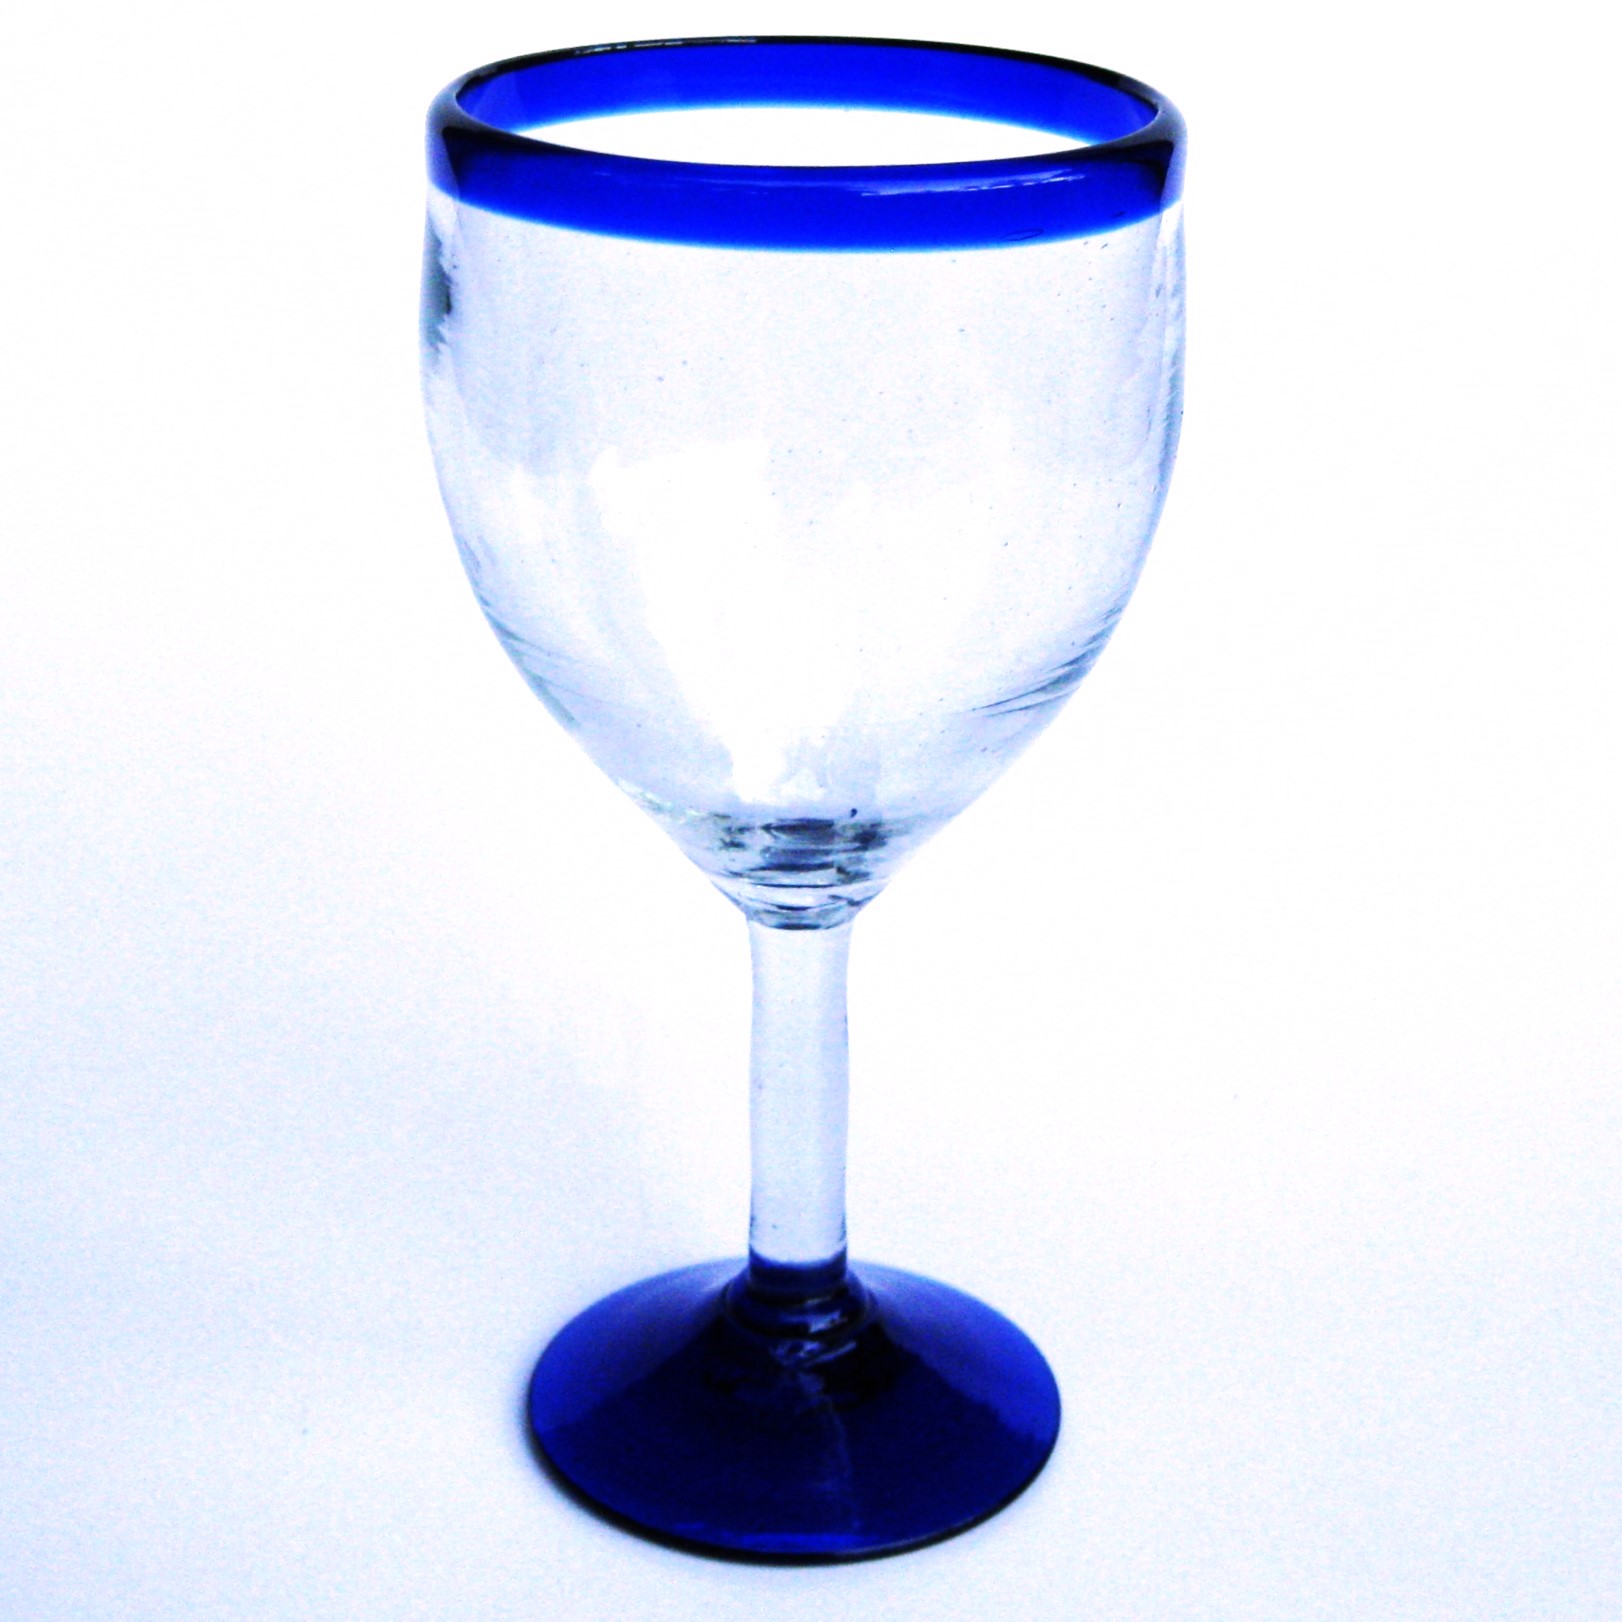 copas para vino con borde azul cobalto, 13 oz, Vidrio Reciclado, Libre de Plomo y Toxinas